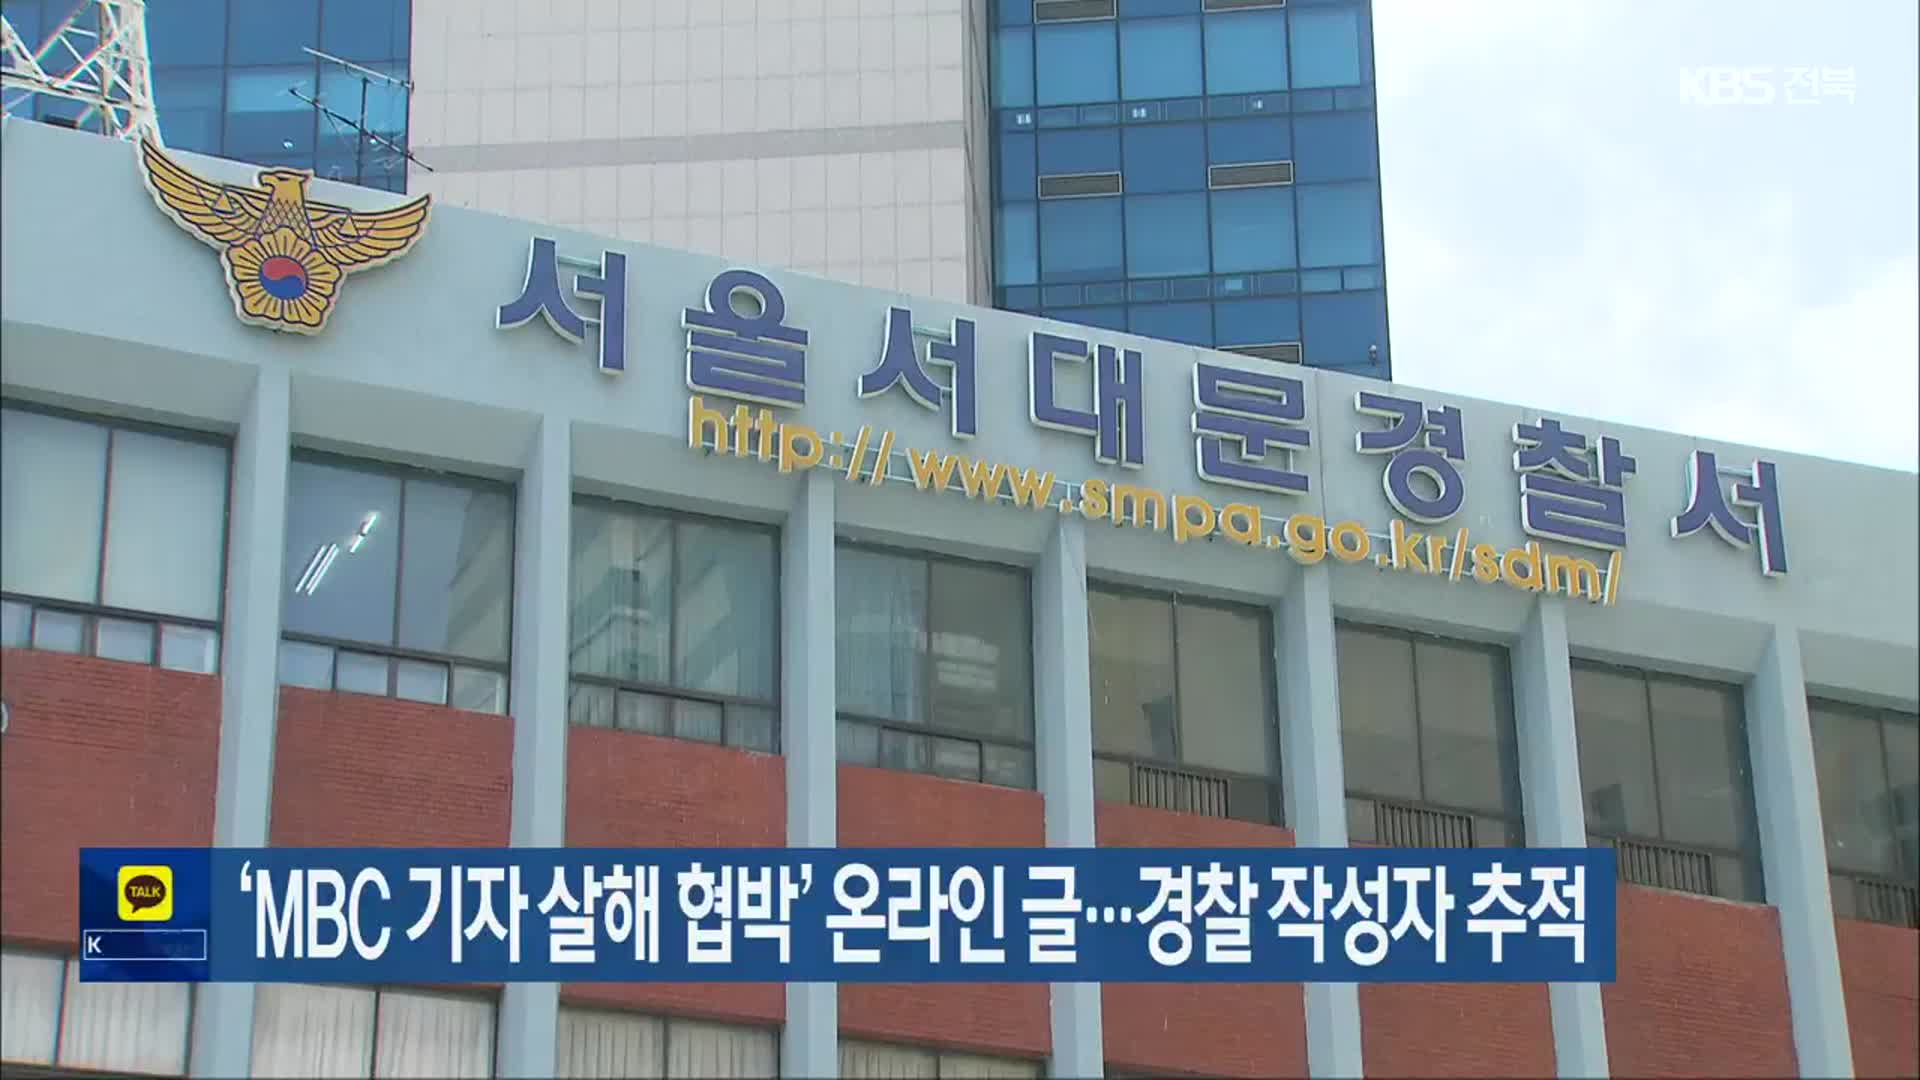 ‘MBC 기자 살해 협박’ 온라인 글…경찰 작성자 추적